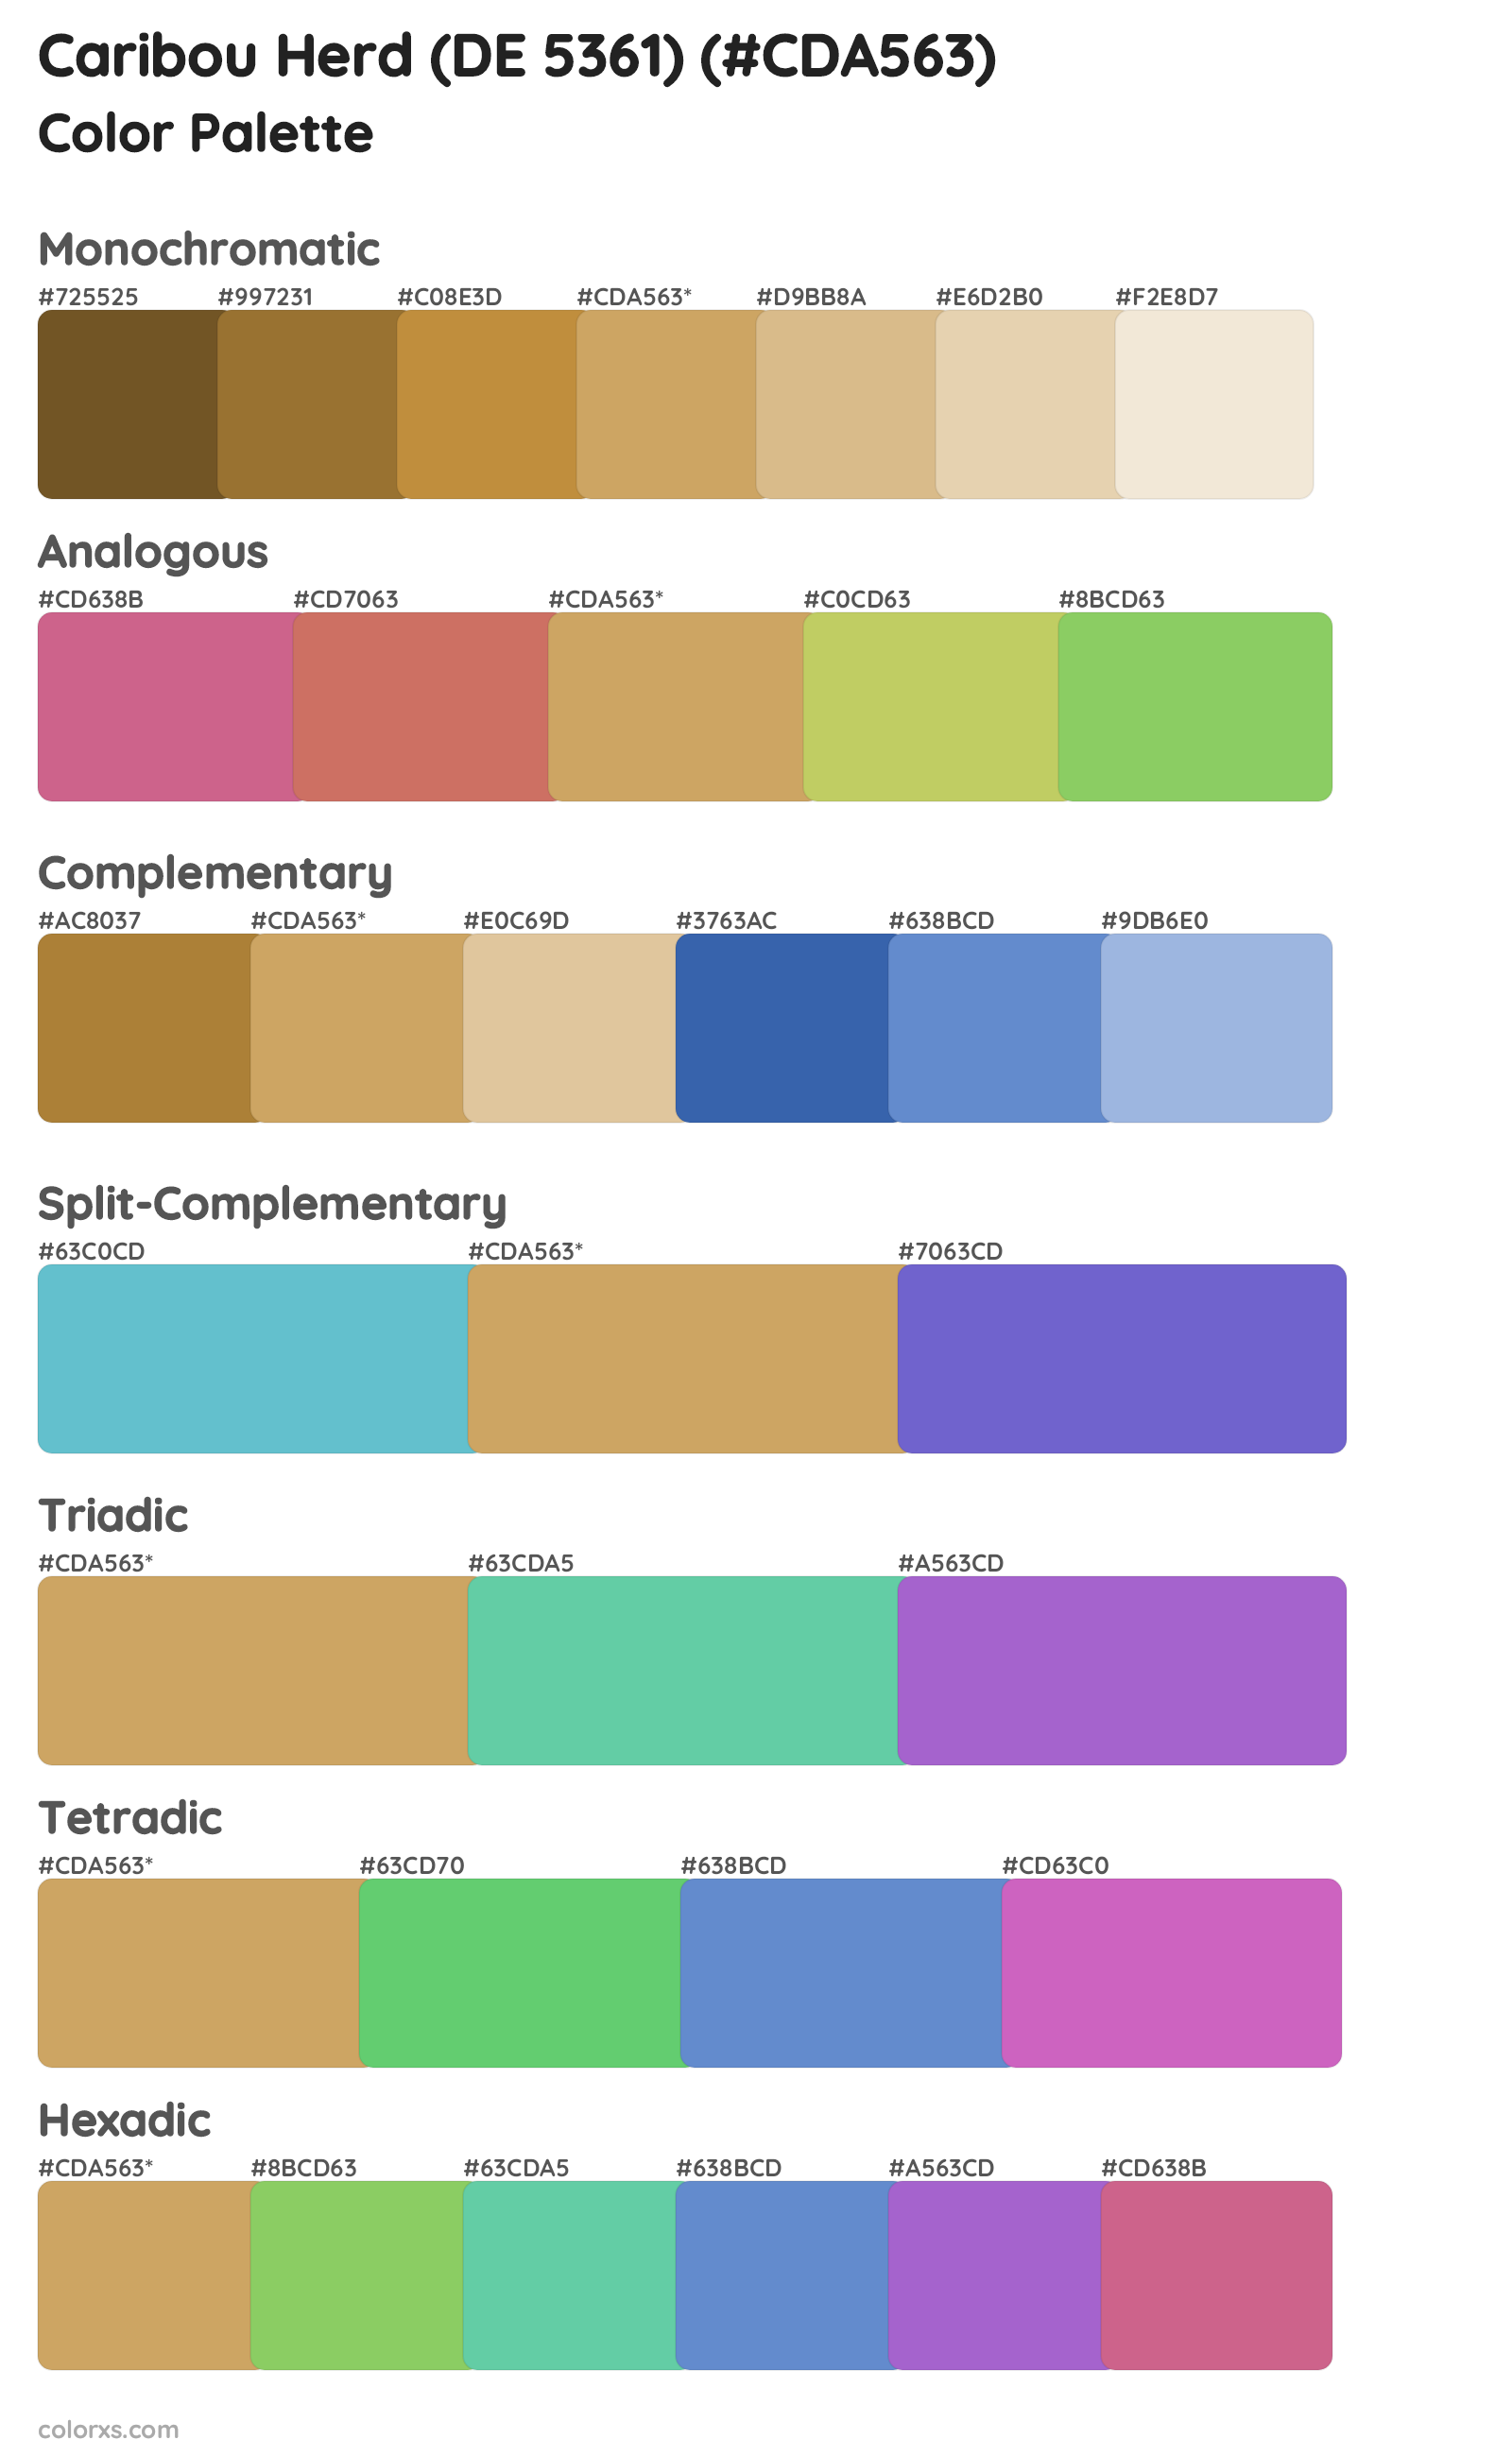 Caribou Herd (DE 5361) Color Scheme Palettes